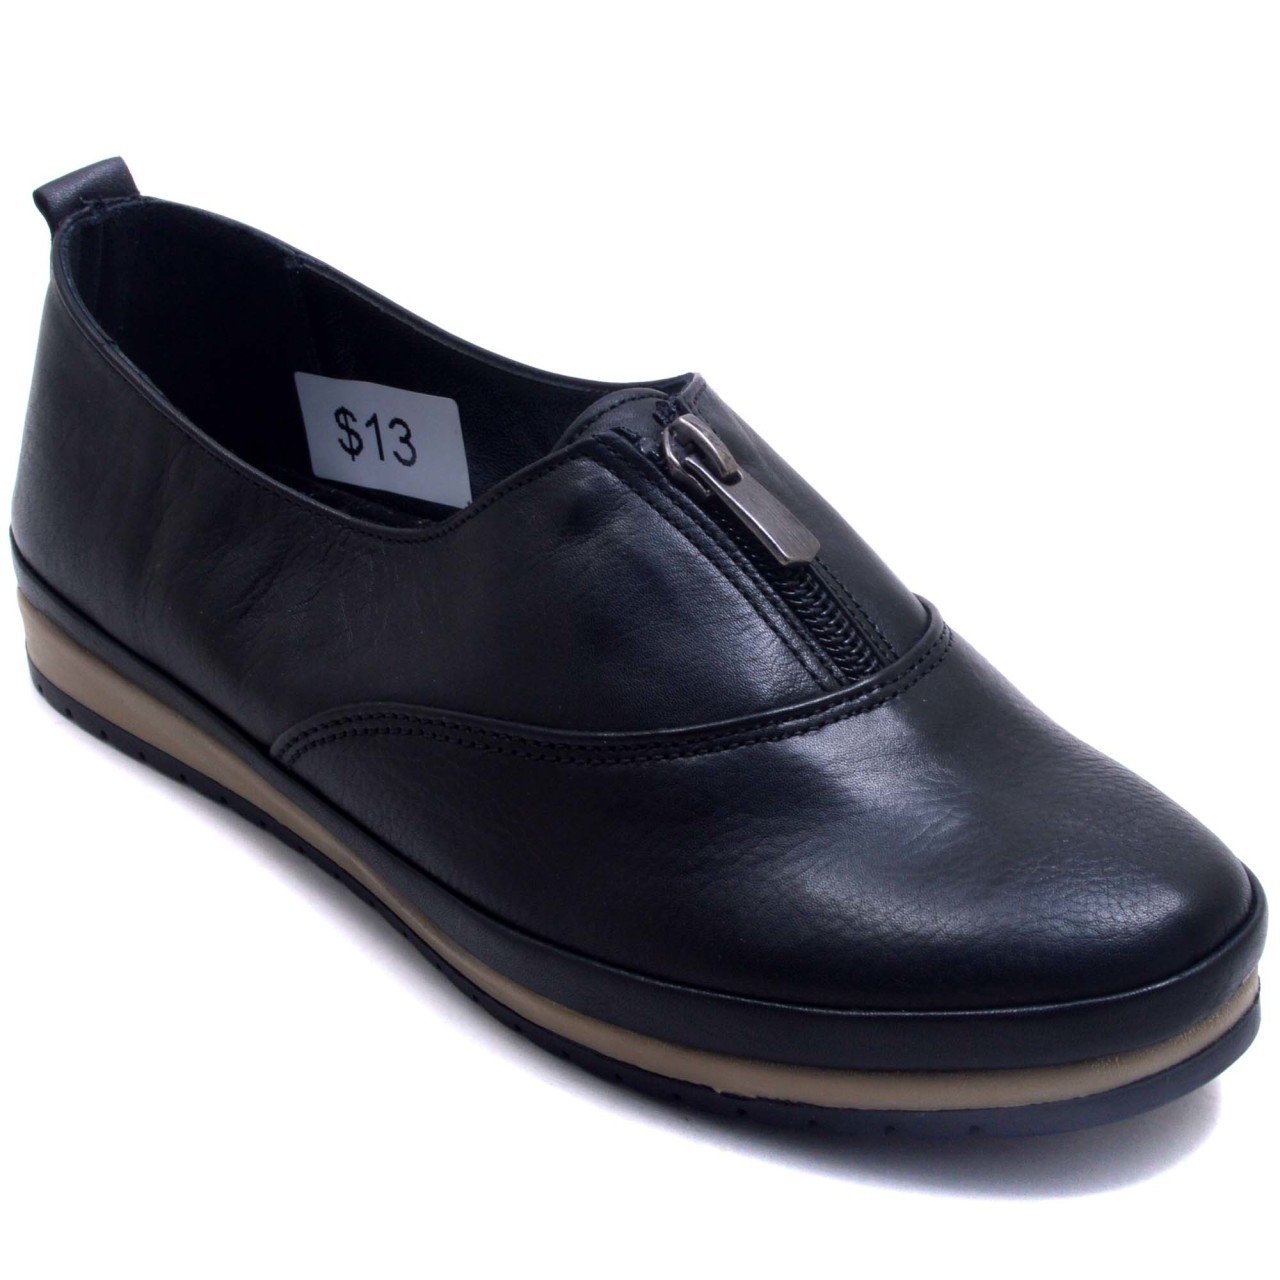 82 Düz Fermuarlı Kadın Günlük Ayakkabı - Siyah (Deri)